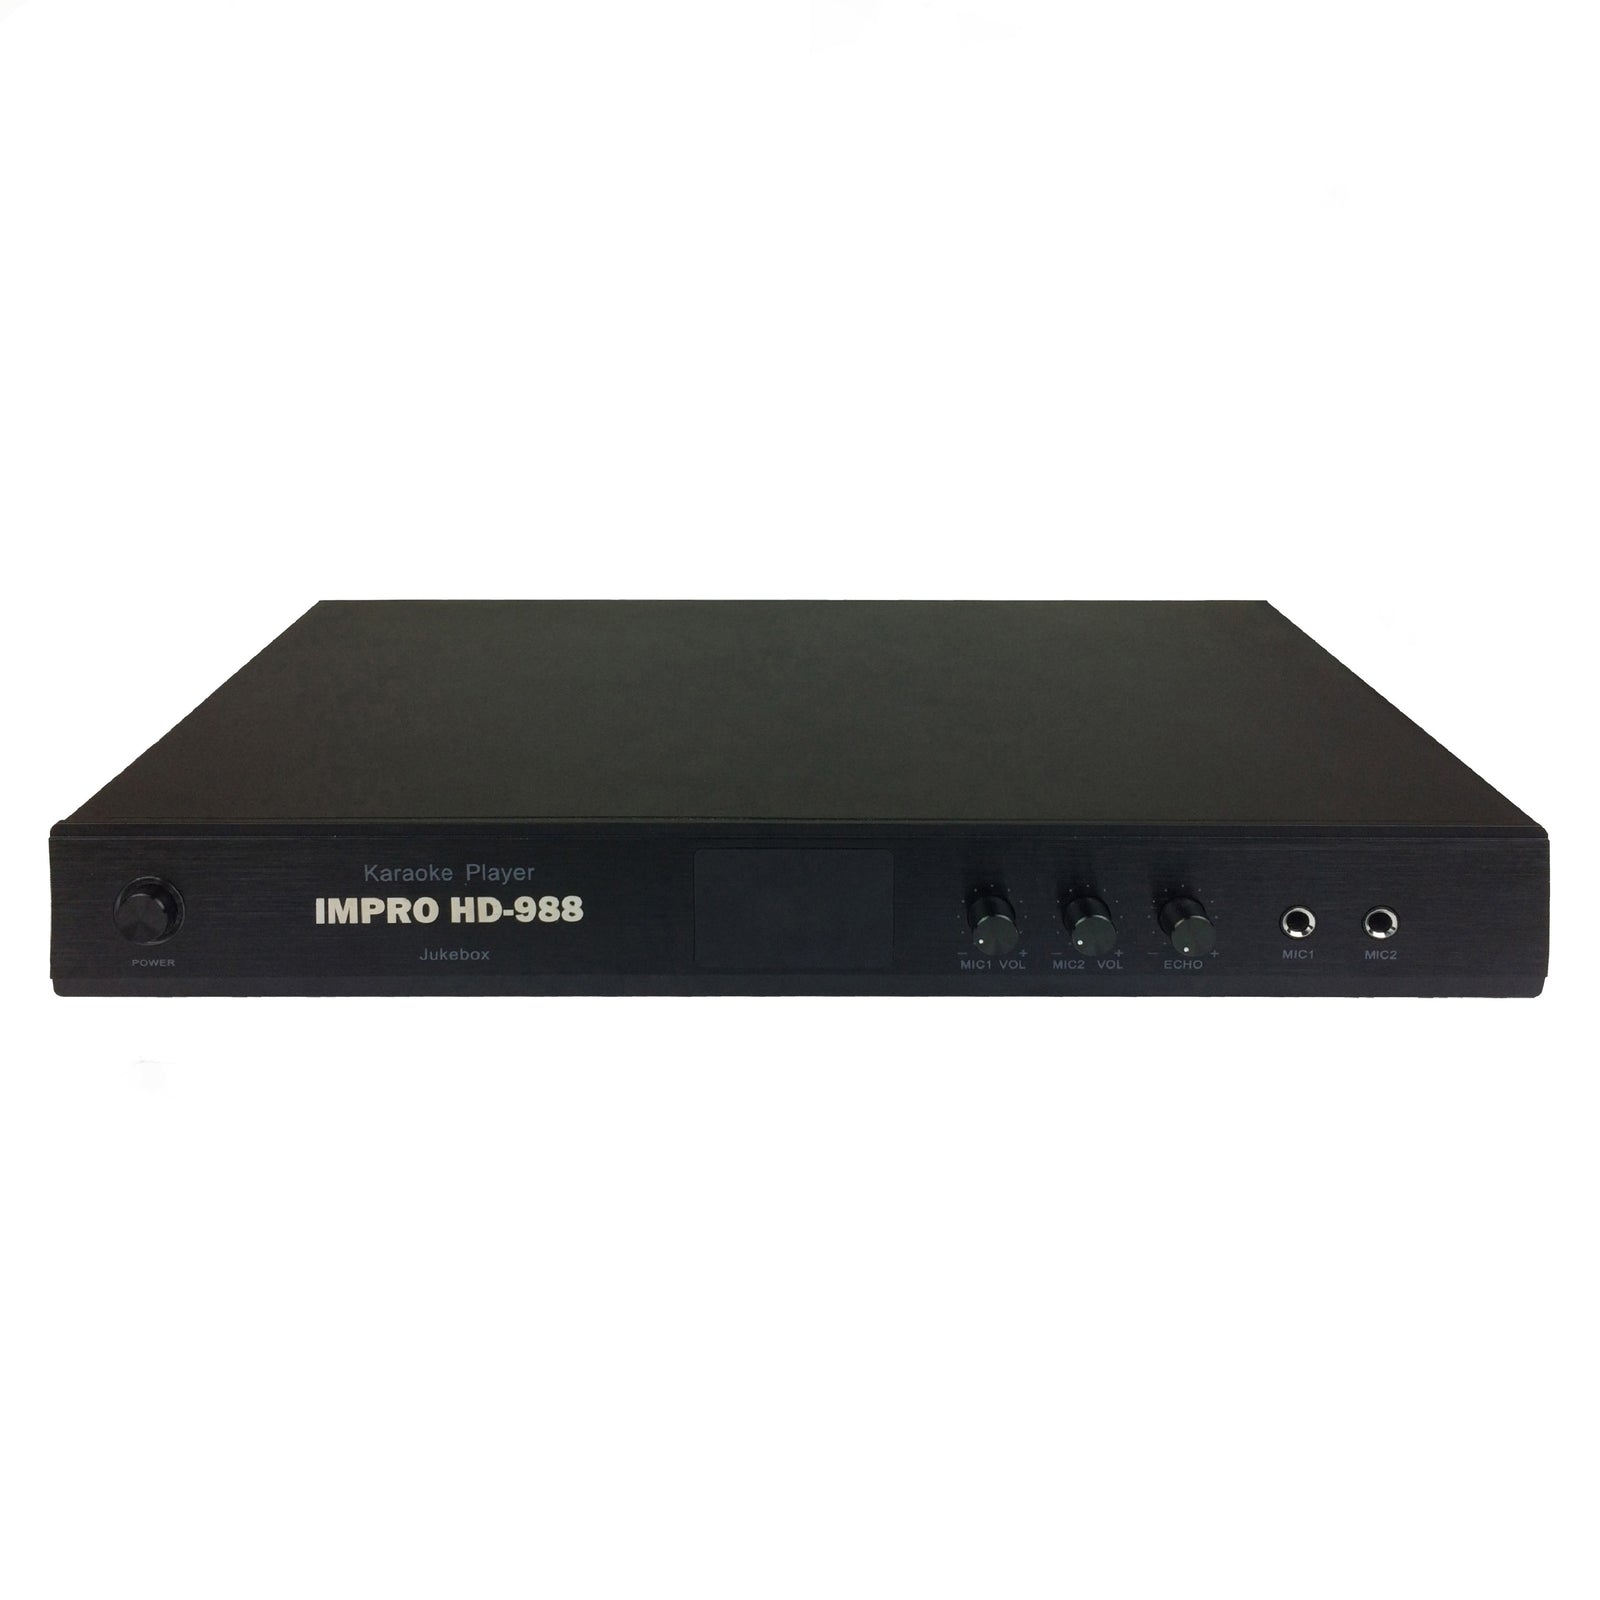 ImPro HD-988 Karaoke Player 3TB -NO DVD Player